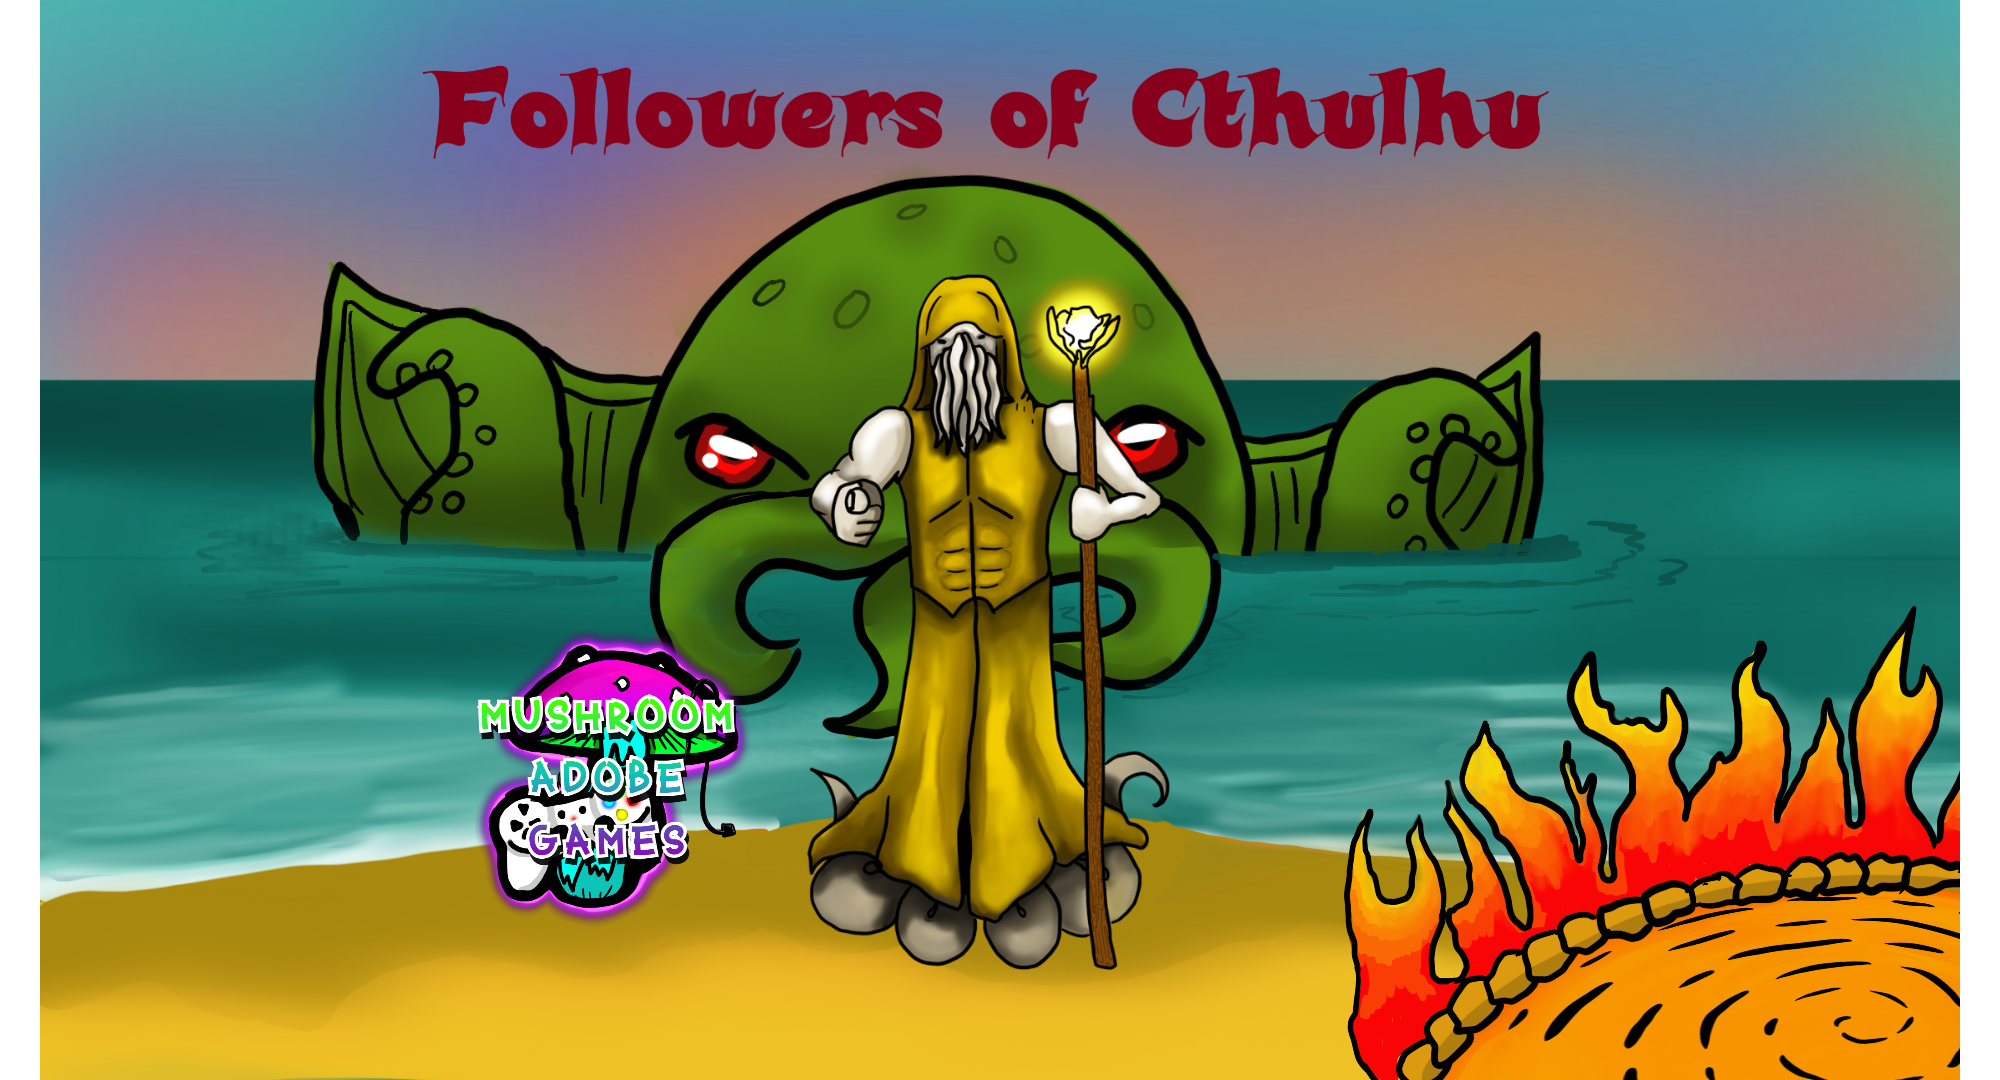 Followers of Cthulhu